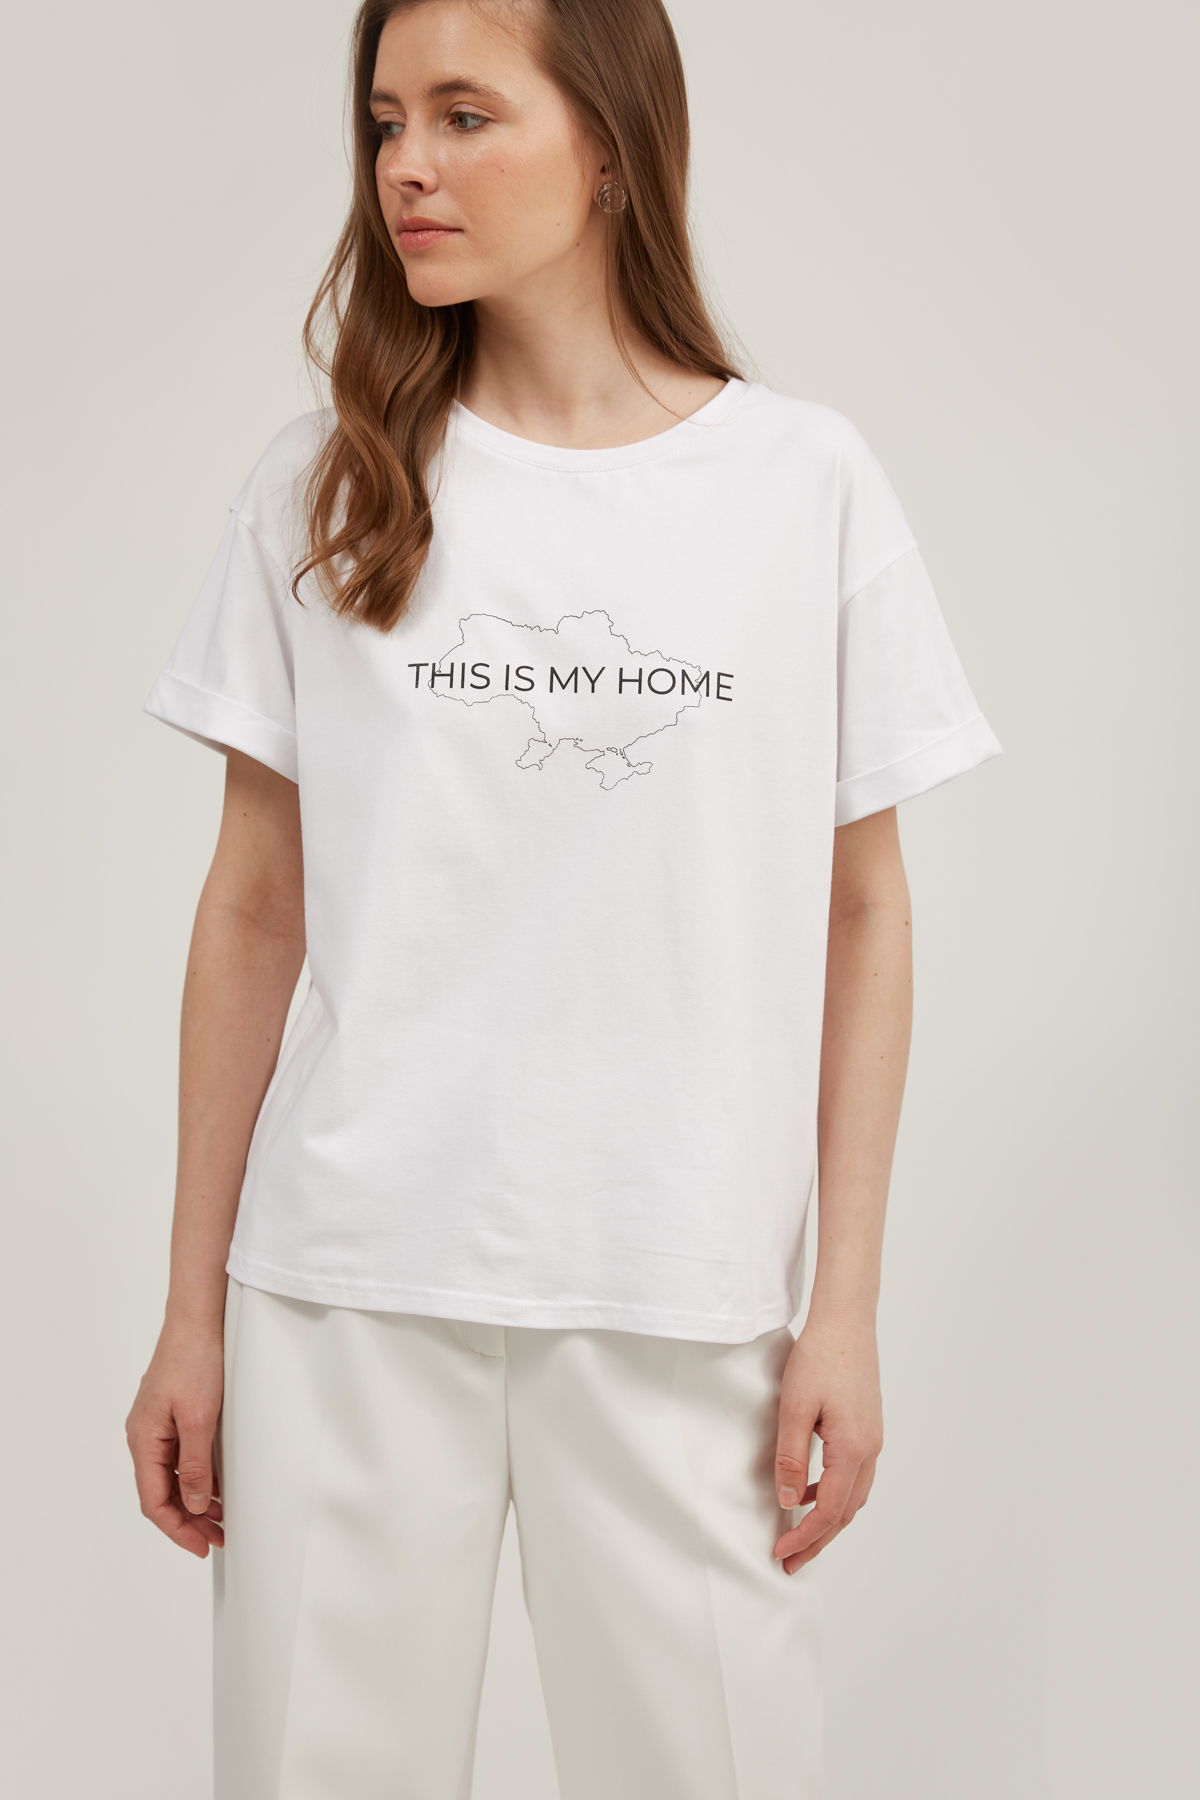 Белая футболка со спущенной линией плеча с надписью "This is my home", фото 2